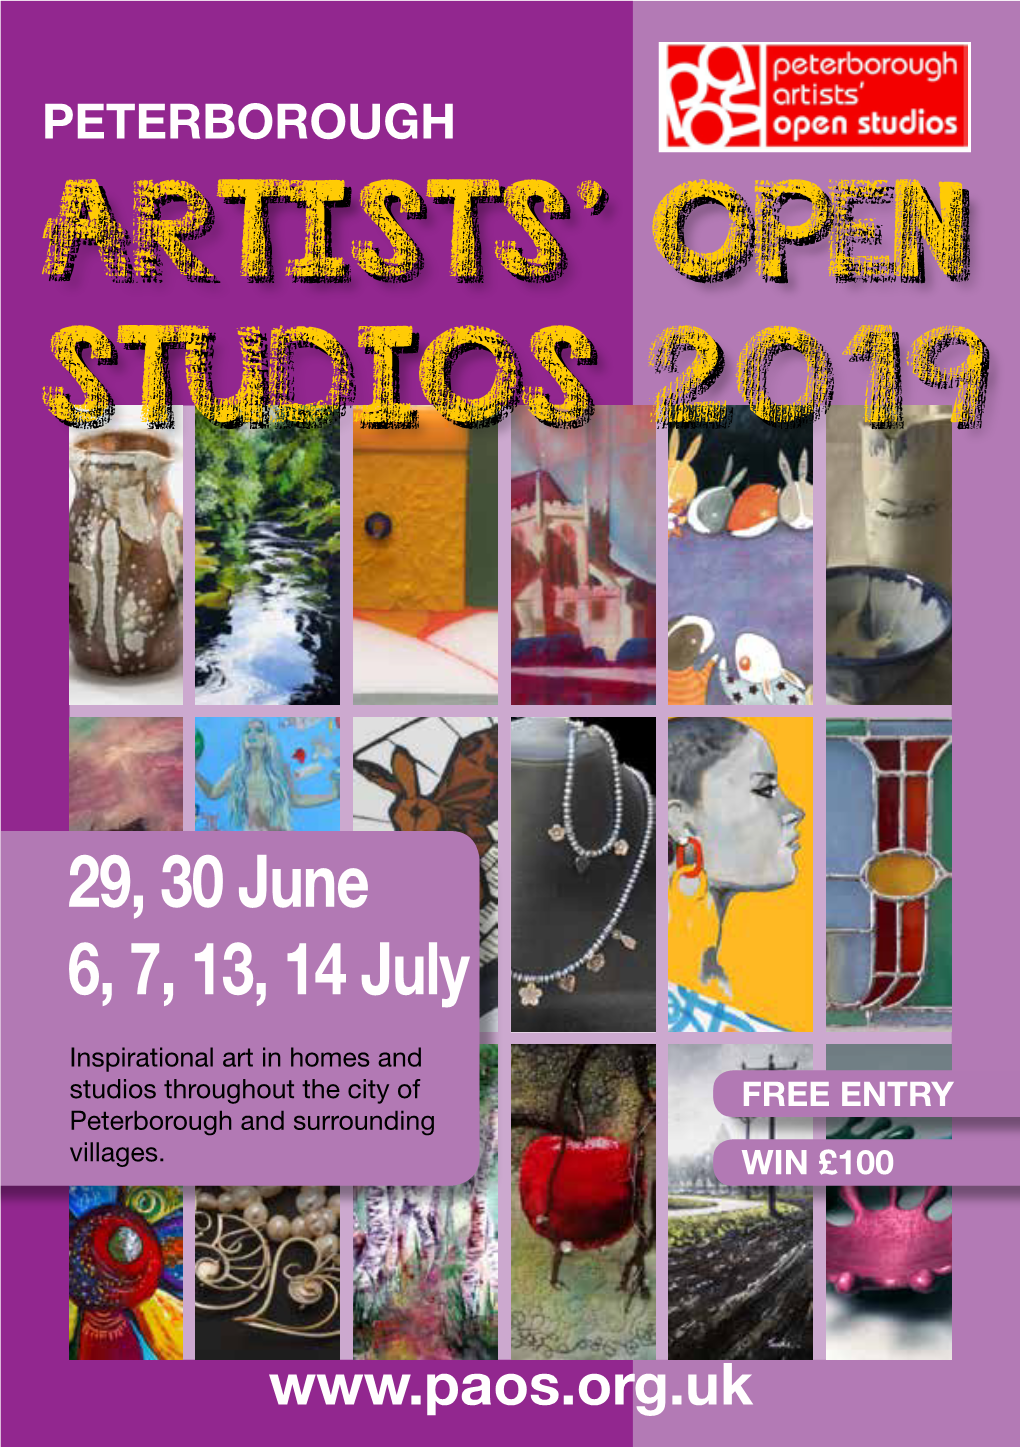 Artists' Open Studios 2019 Artists' Open Studios 2019